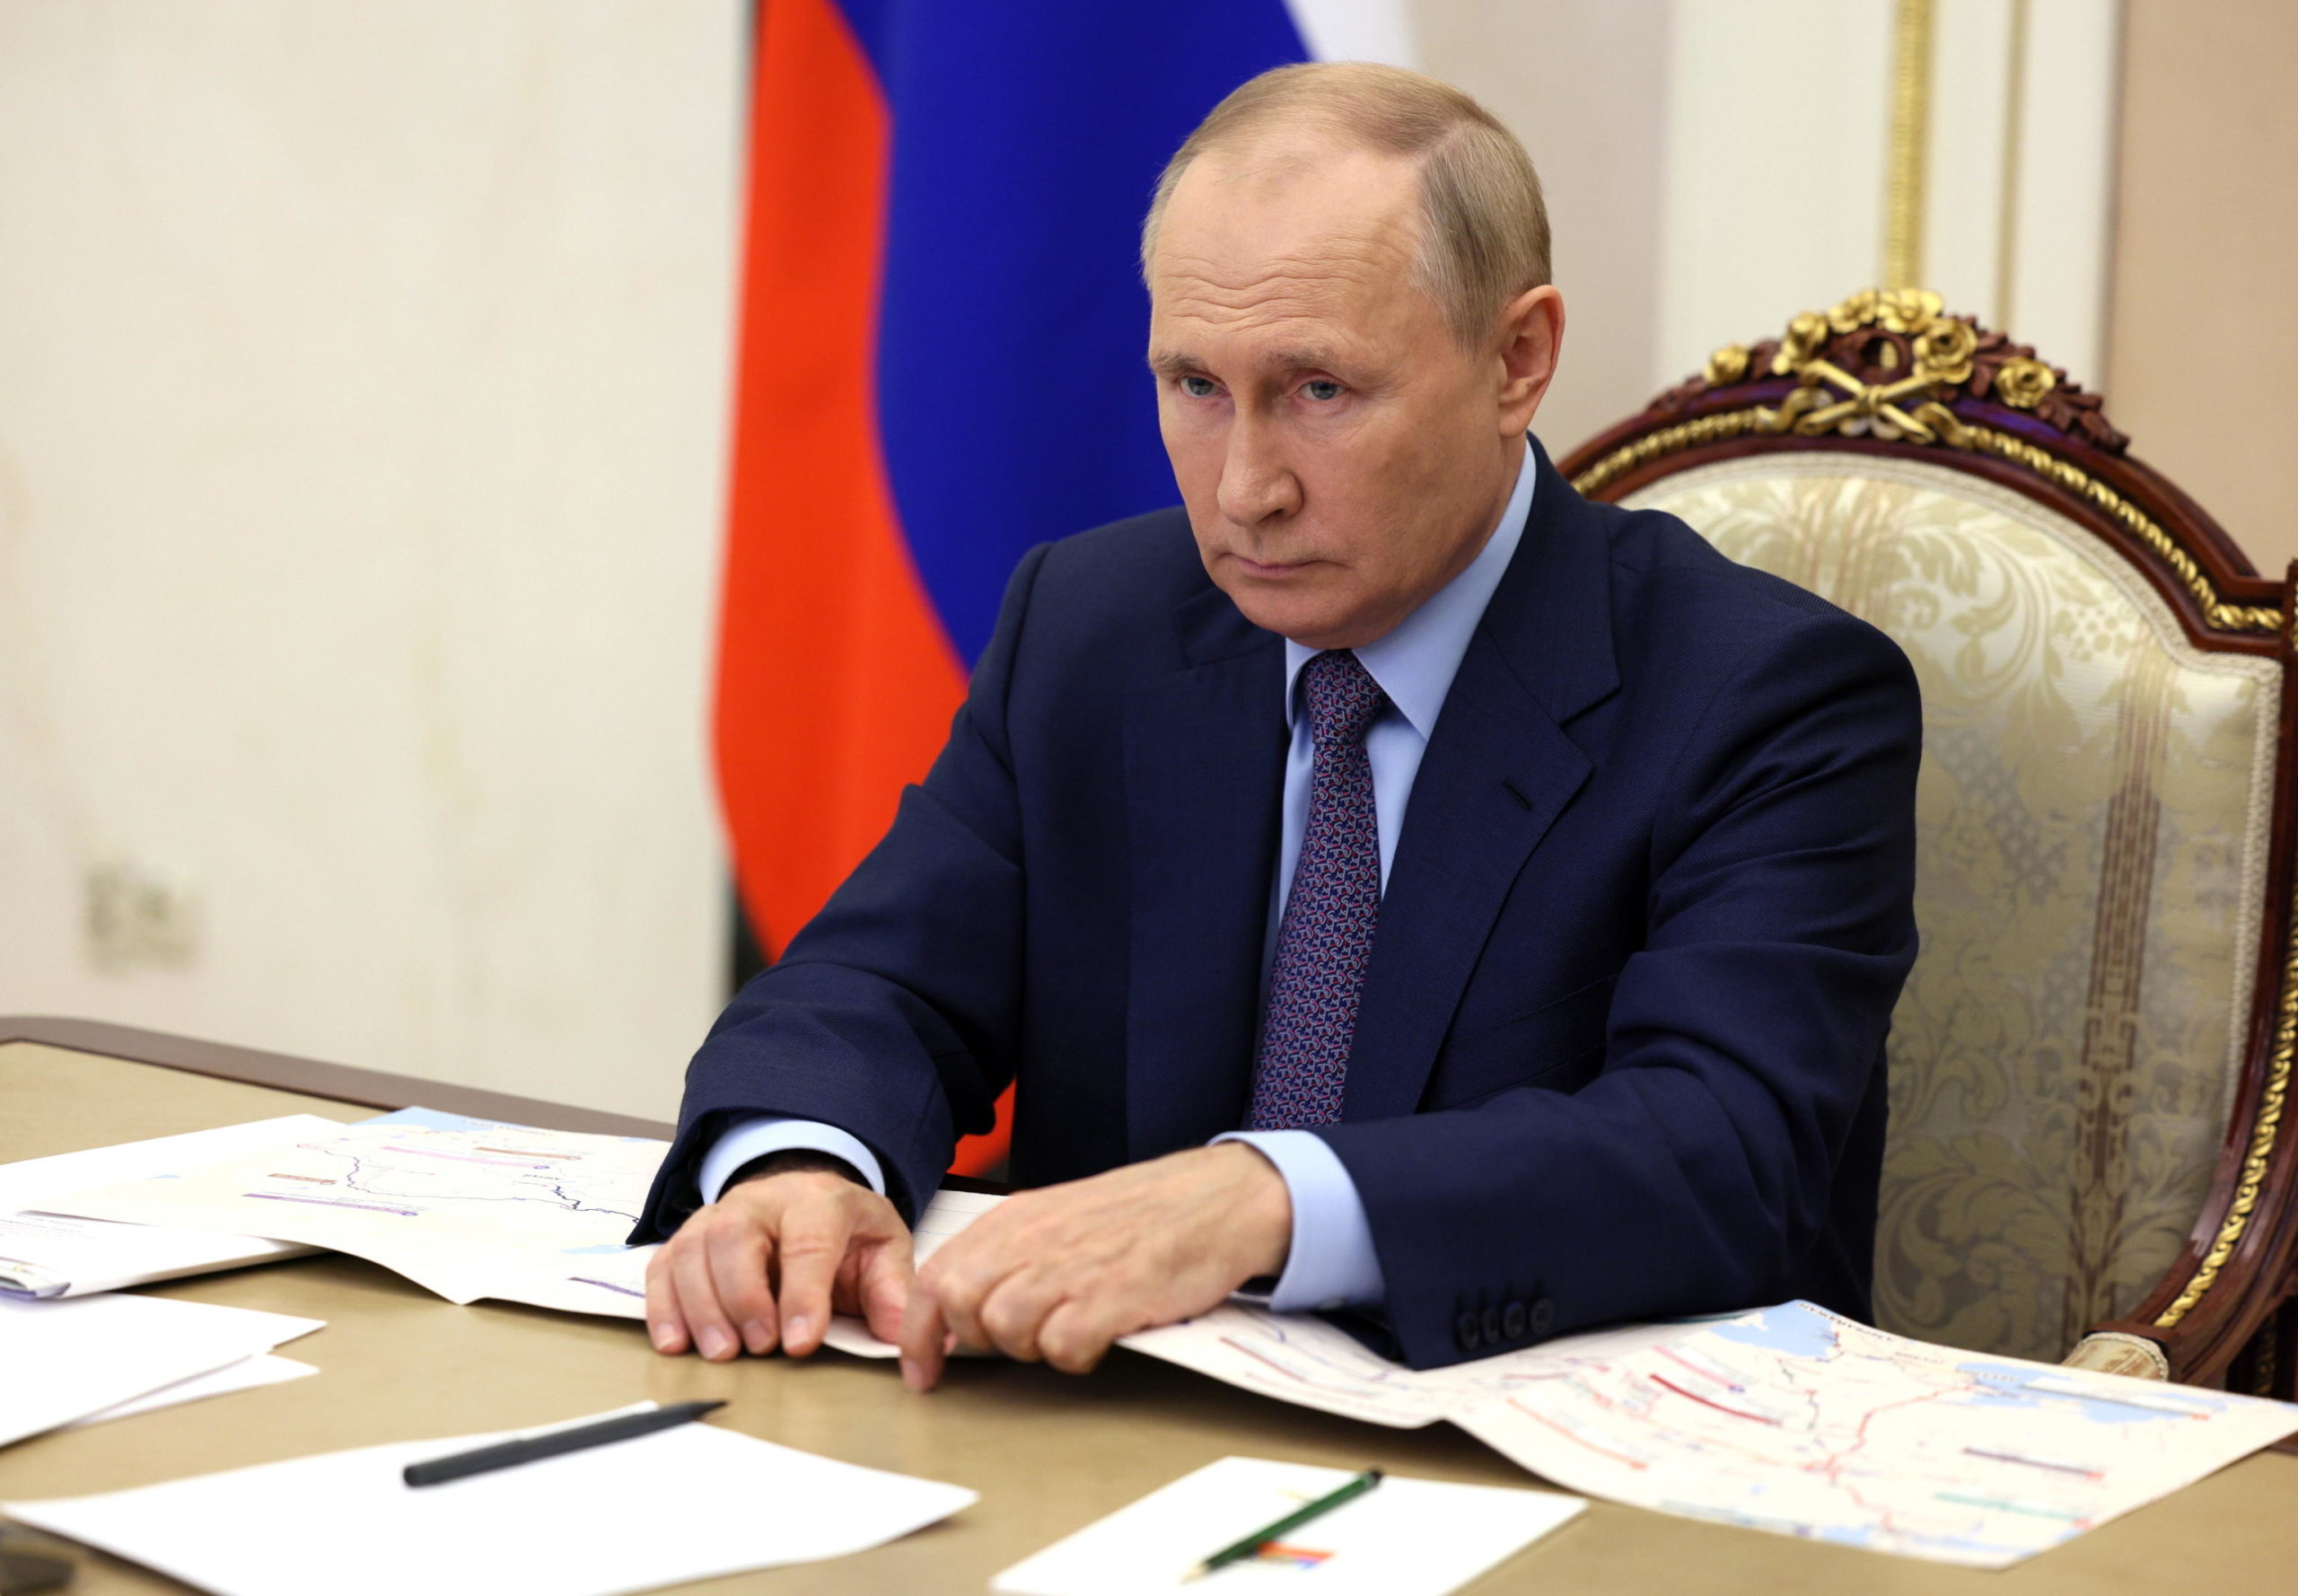 Mosca rileva gli asset russi di due società straniere. Putin firma il decreto